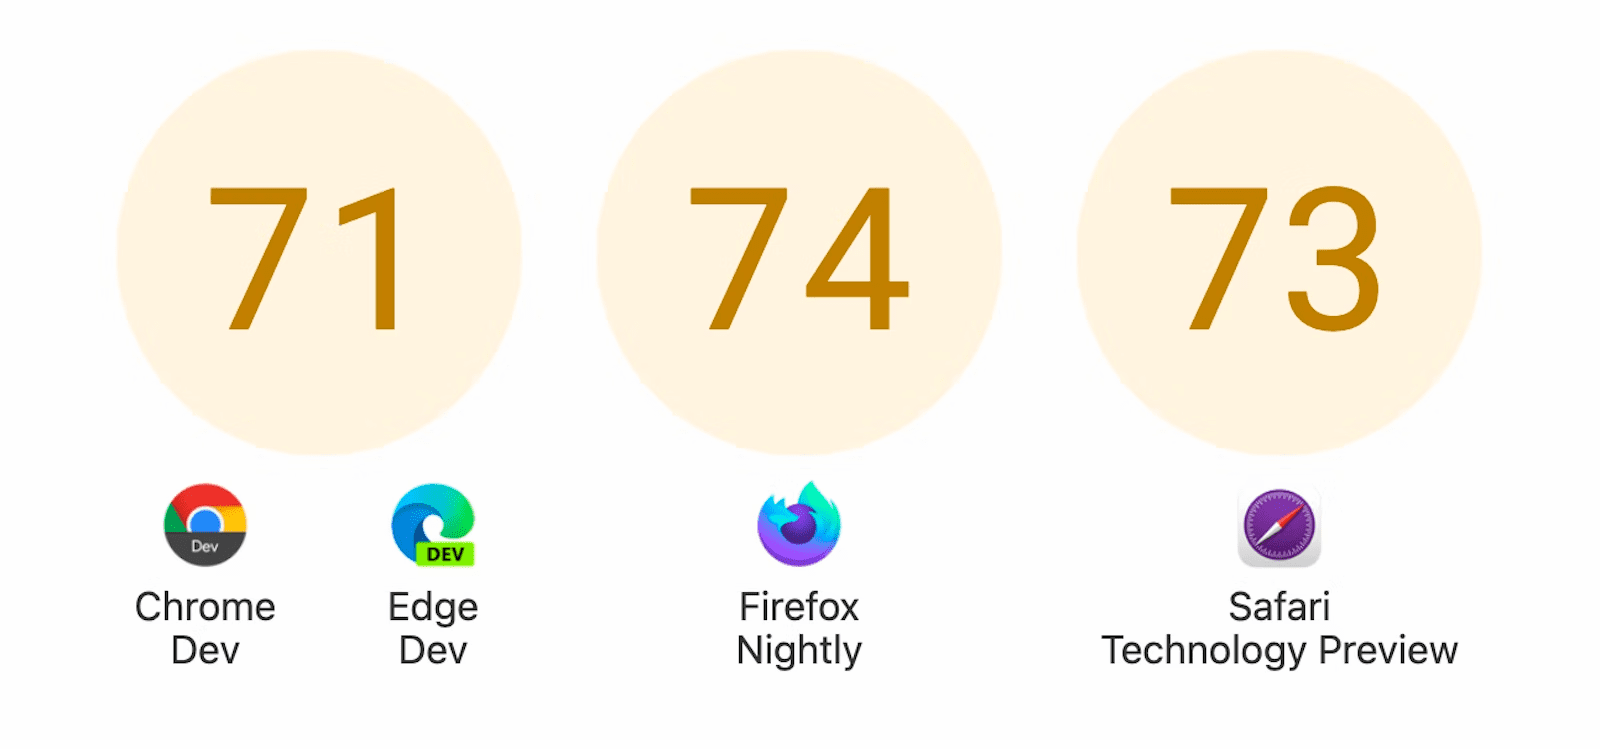 Wyświetlam 3 okręgi z punktami: 71 dla Chrome Dev i Edge Dev, 74 dla przeglądarki Firefox Nightly i 73 dla przeglądarki Safari Technology Preview.